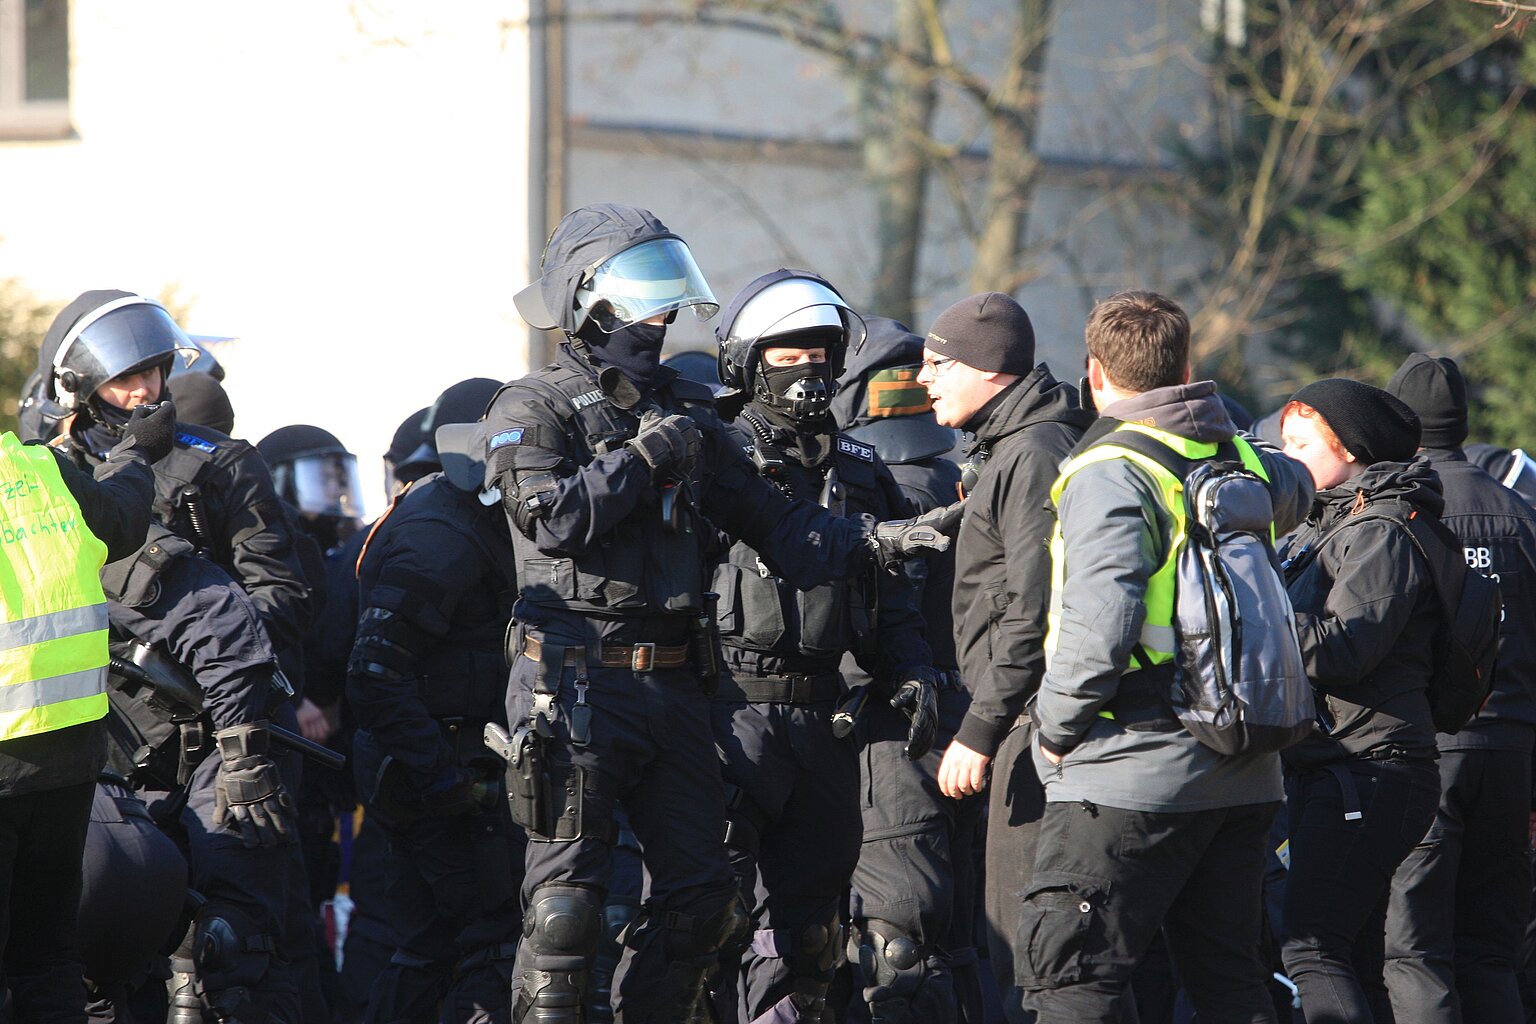  – Polizei: Schutz für Journalisten nötig. Foto: Sören Kohlhuber